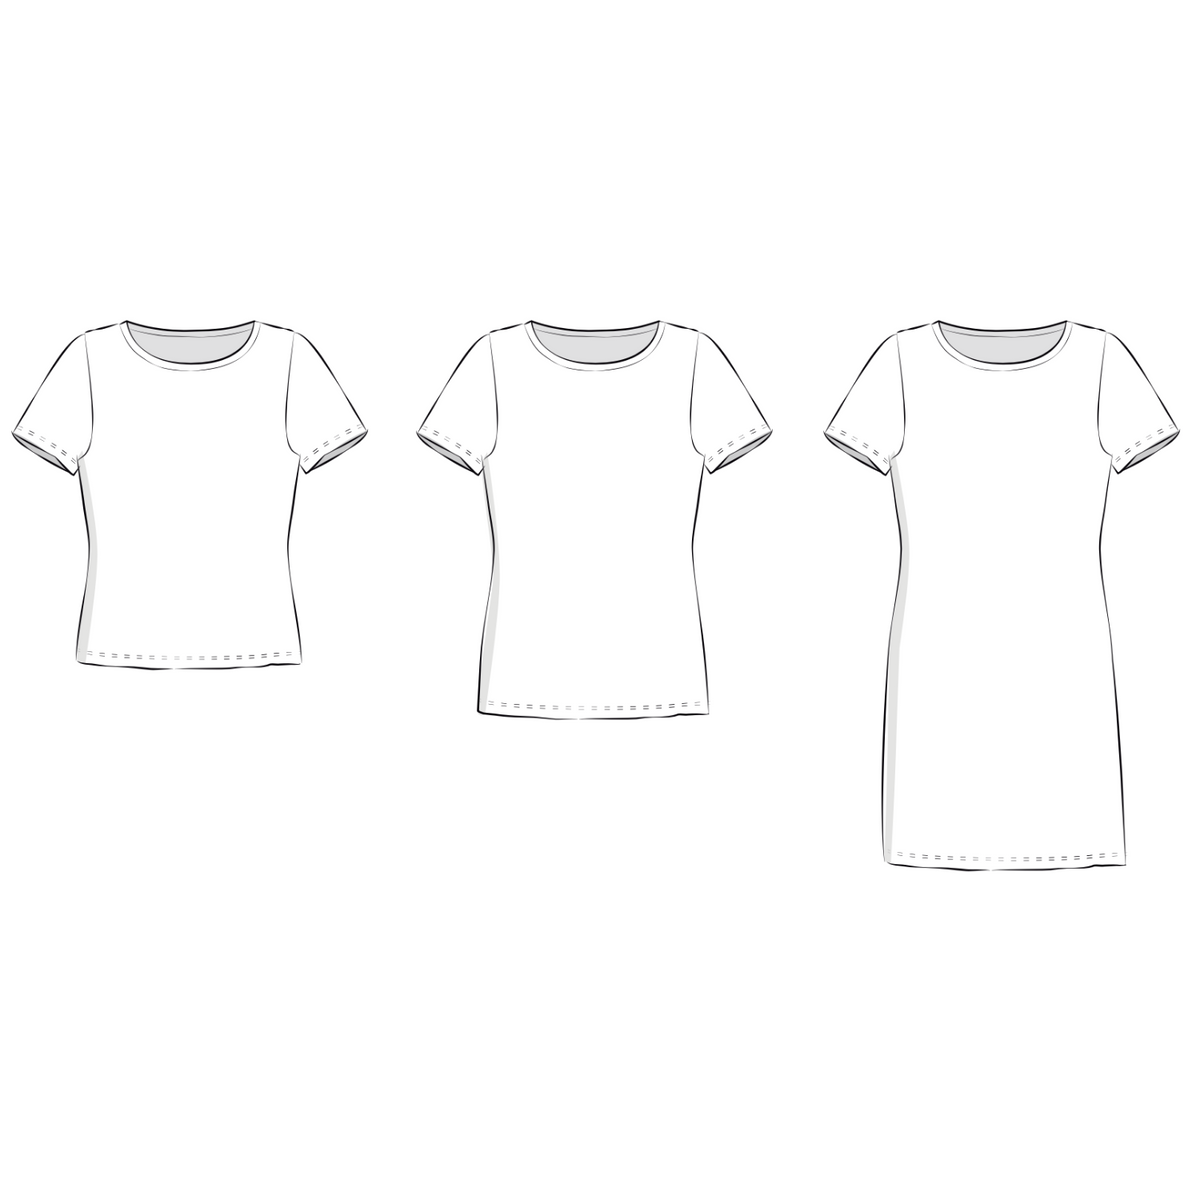 Schnittmuster Shirt/Schlauchkleid Amy: T-Shirt Variante in kurz und lang sowie die Schlauchkleid-Option